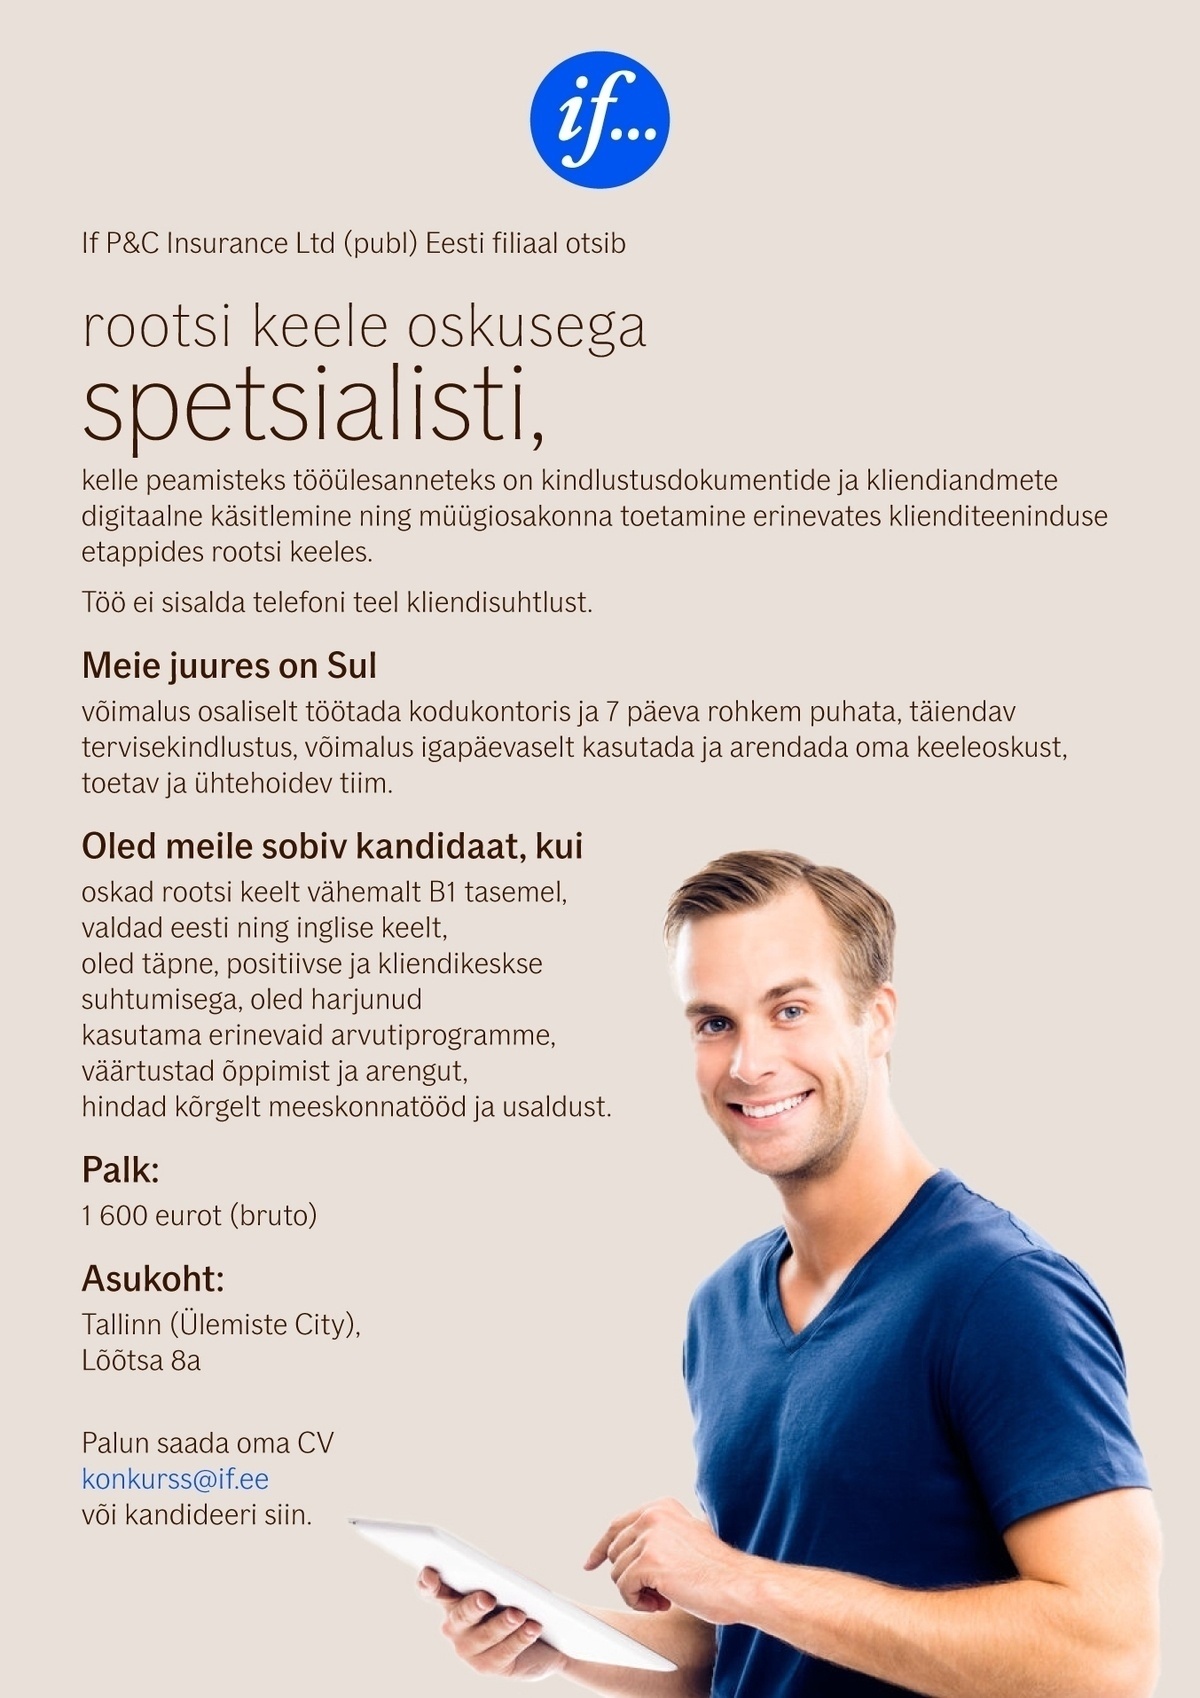 If P&C Insurance Ltd (publ) Eesti filiaal ROOTSI KEELE OSKUSEGA SPETSIALIST